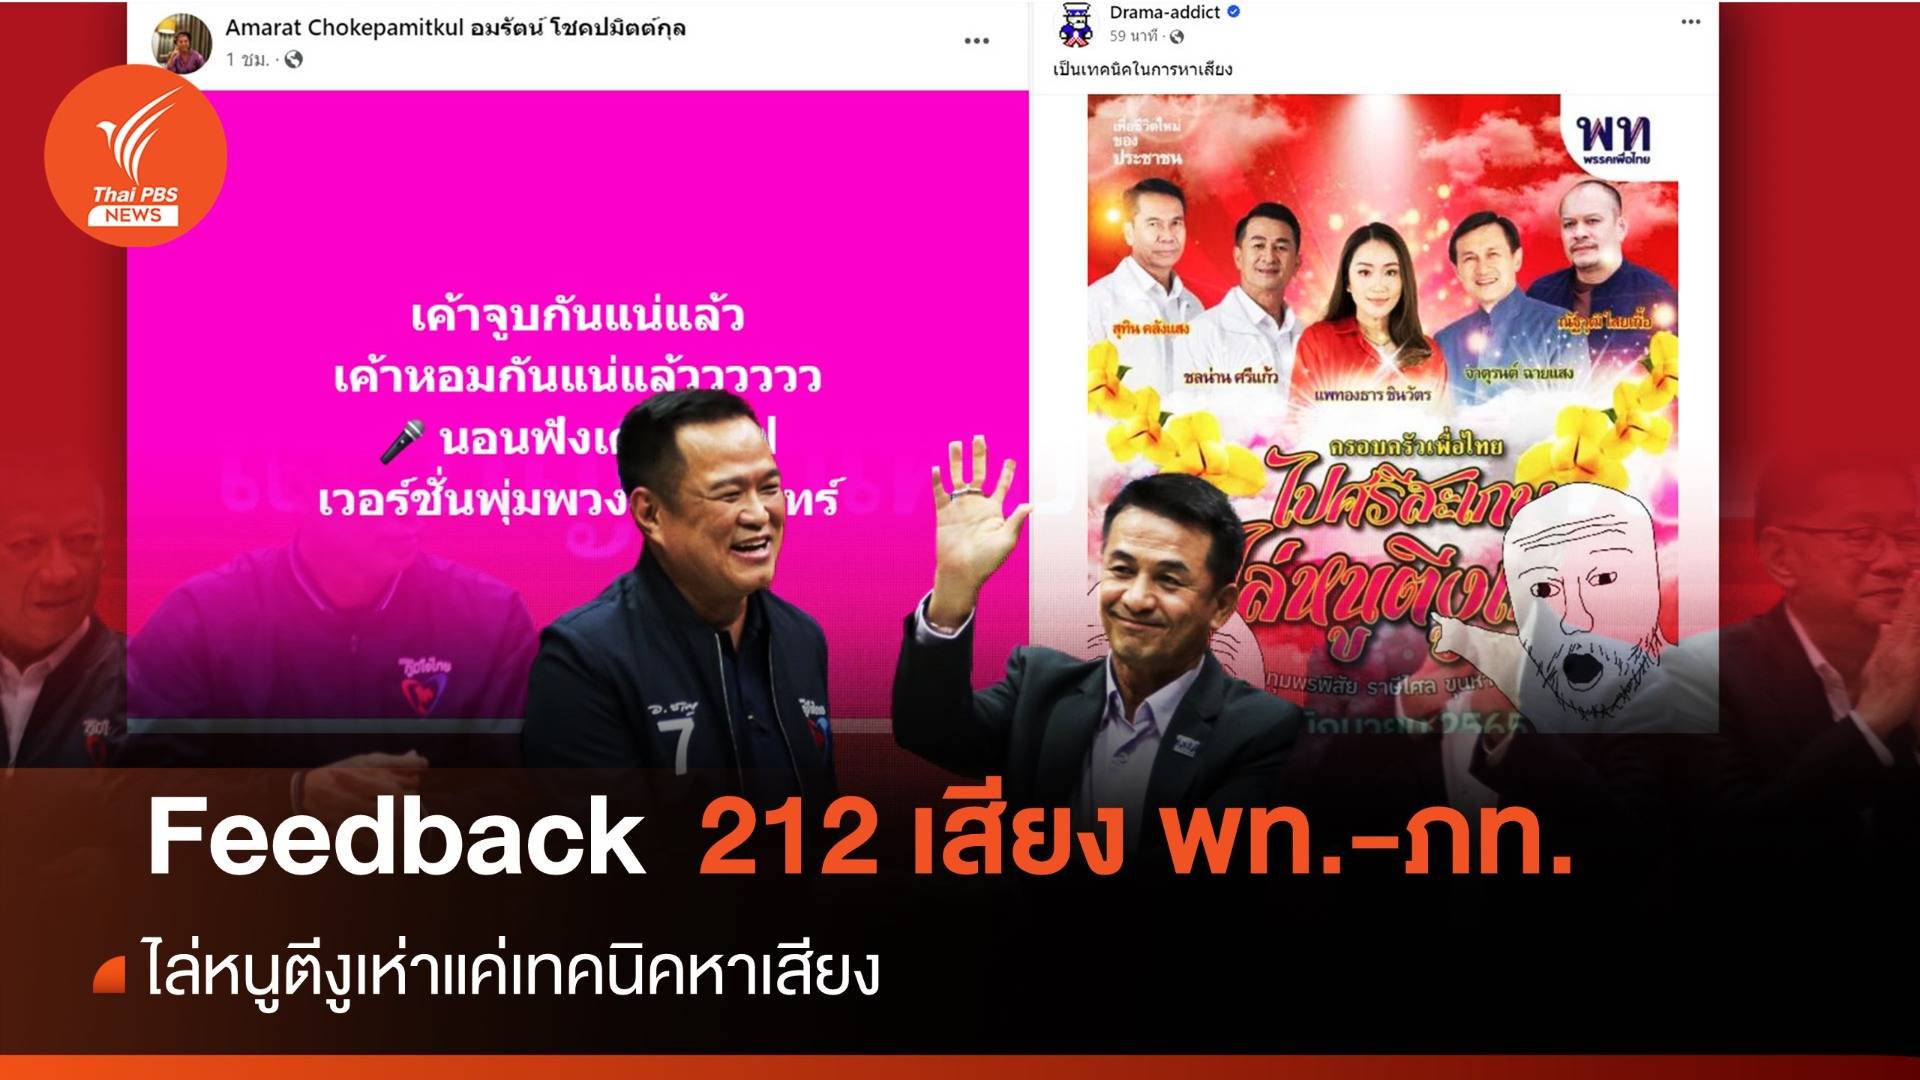 feedback เพื่อไทย-ภูมิใจไทยชู 212 ตั้งรัฐบาล "ไล่หนูตีงูเห่า" แค่หาเสียง 